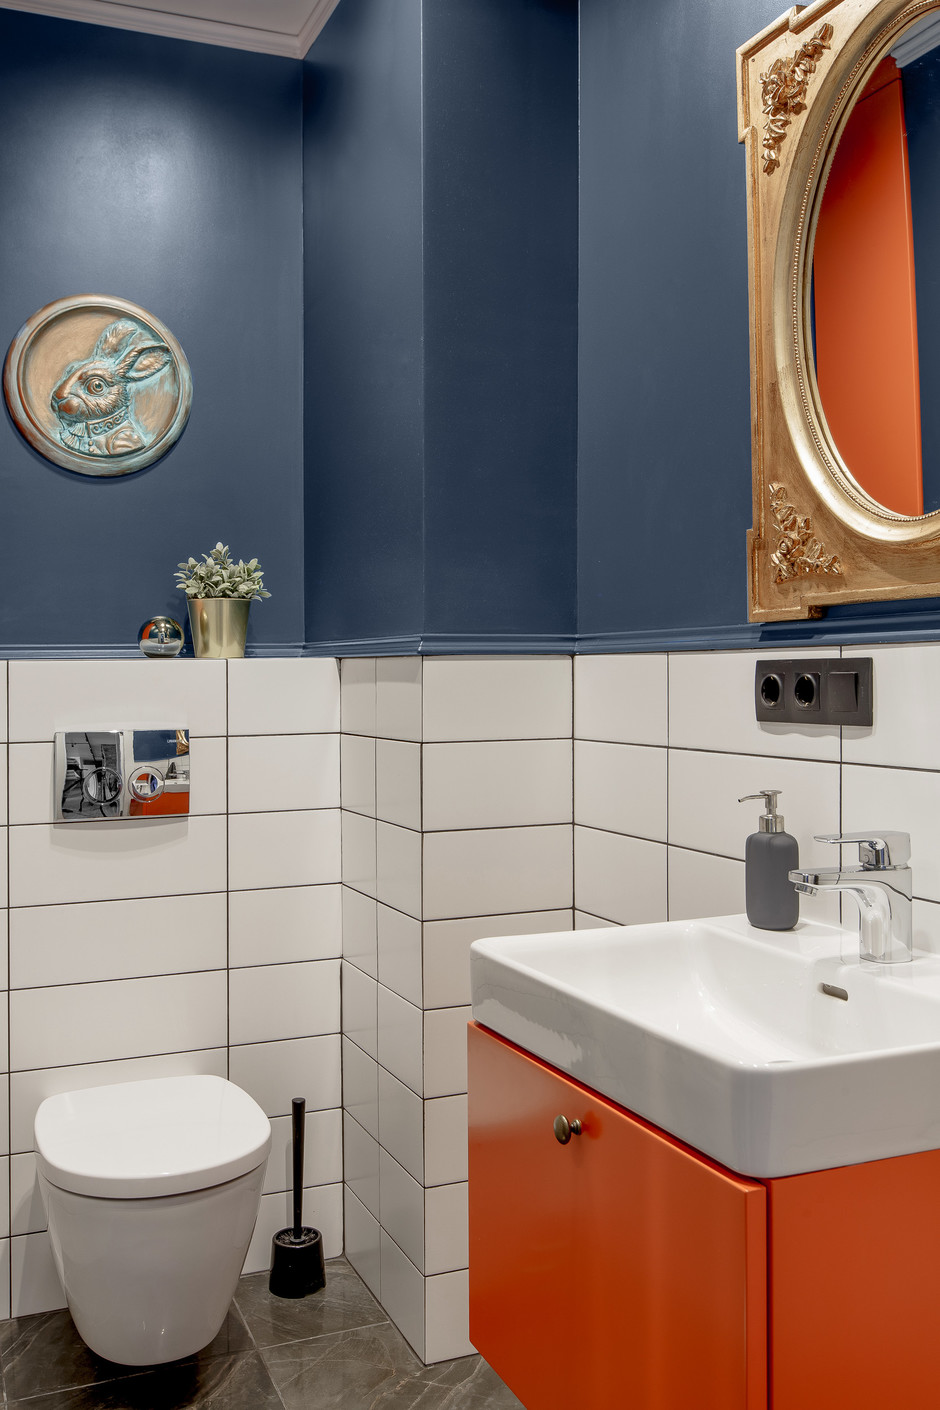 Phòng tắm tuy nhỏ nhưng NTK khéo léo kết hợp sơn tường màu xanh navy đậm và gạch ốp màu trắng để trang trí nội thất. Bên cạnh đó, chiếc tủ vanity (tủ lưu trữ kết hợp bồn rửa) màu cam và trắng sứ càng làm tăng sự nổi bật cho phòng tắm.